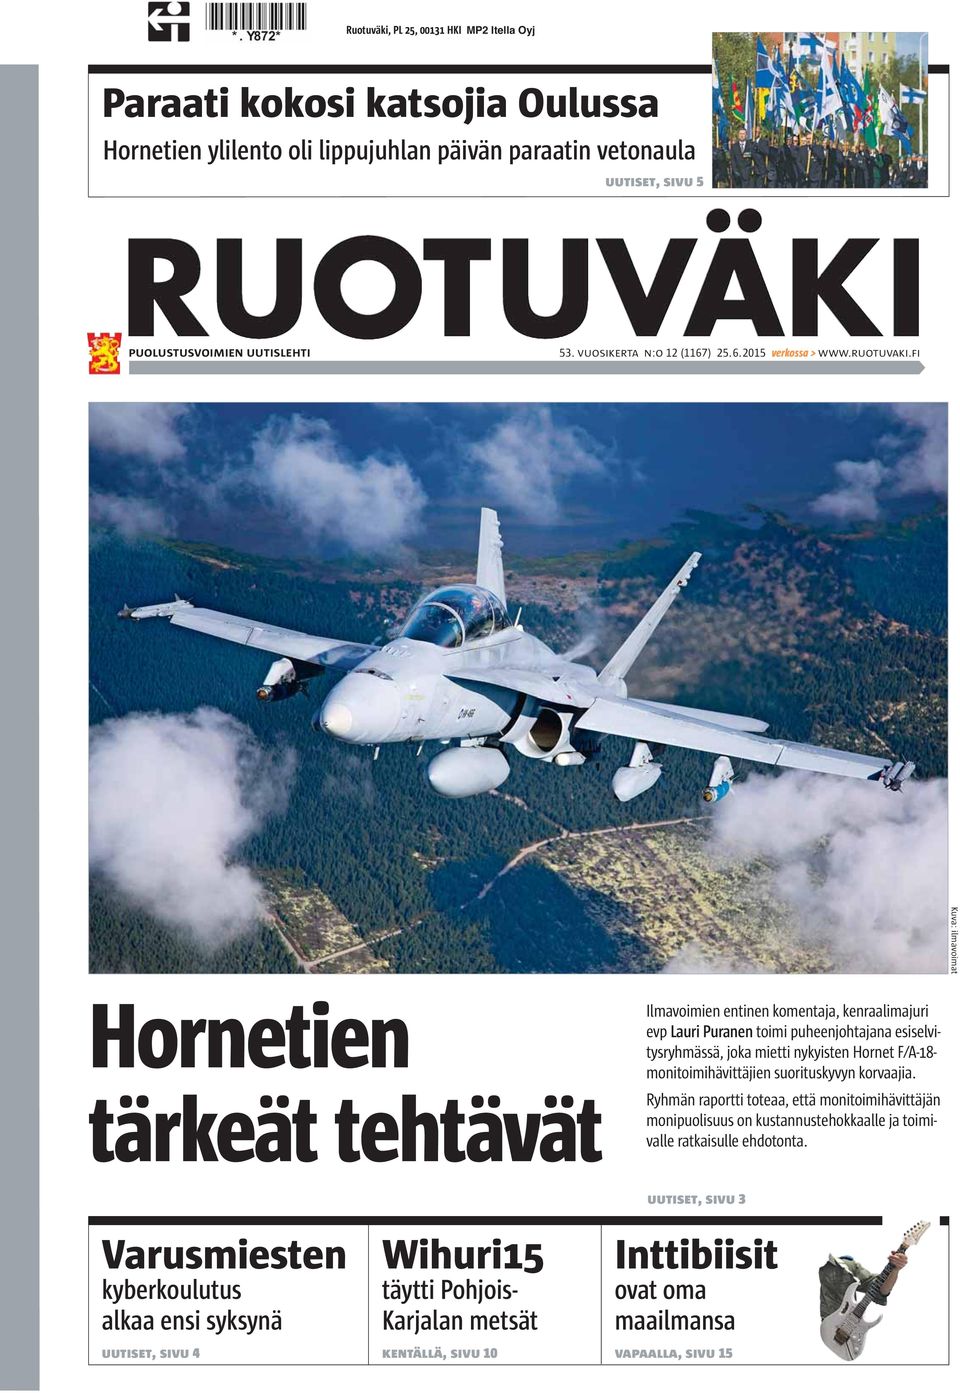 fi Kuva: ilmavoimat Hornetien tärkeät tehtävät Ilmavoimien entinen komentaja, kenraalimajuri evp Lauri Puranen toimi puheenjohtajana esiselvitysryhmässä, joka mietti nykyisten Hornet F/A-18-